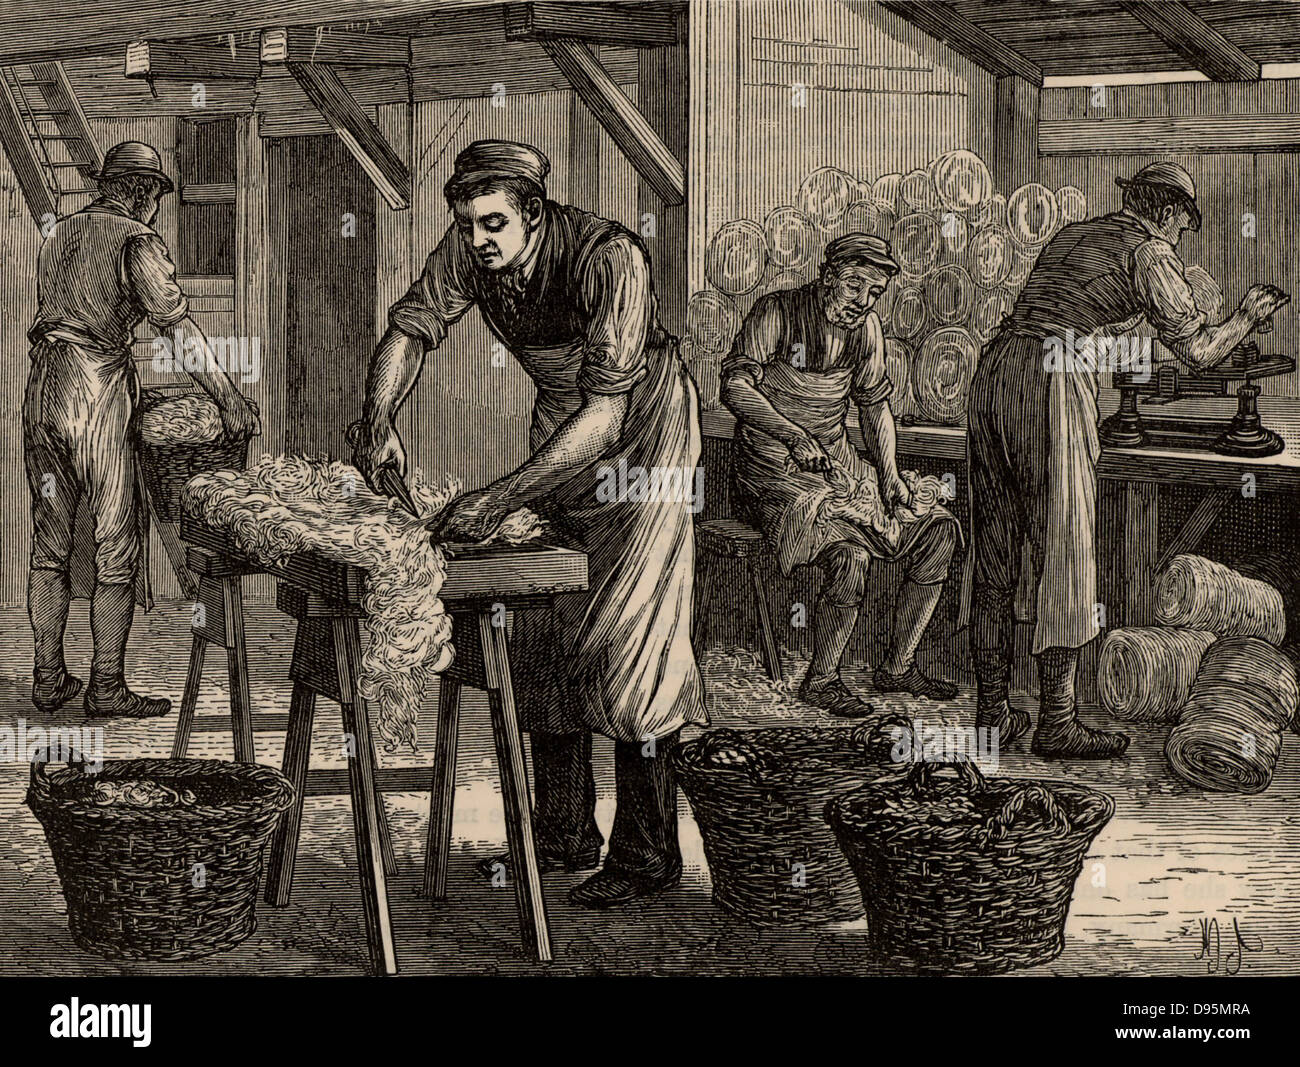 Woolsorters. Diese Arbeiter, die von einem woolstapler beschäftigt waren, die Wolle aus verschiedenen Bereichen der Vliese in Partien getrennt sortiert. Wie Gerber, waren sie gefährdet Anthrax von der Vliese. Von "großen Industrien von Großbritannien" (London, 1880). Gravur. Stockfoto